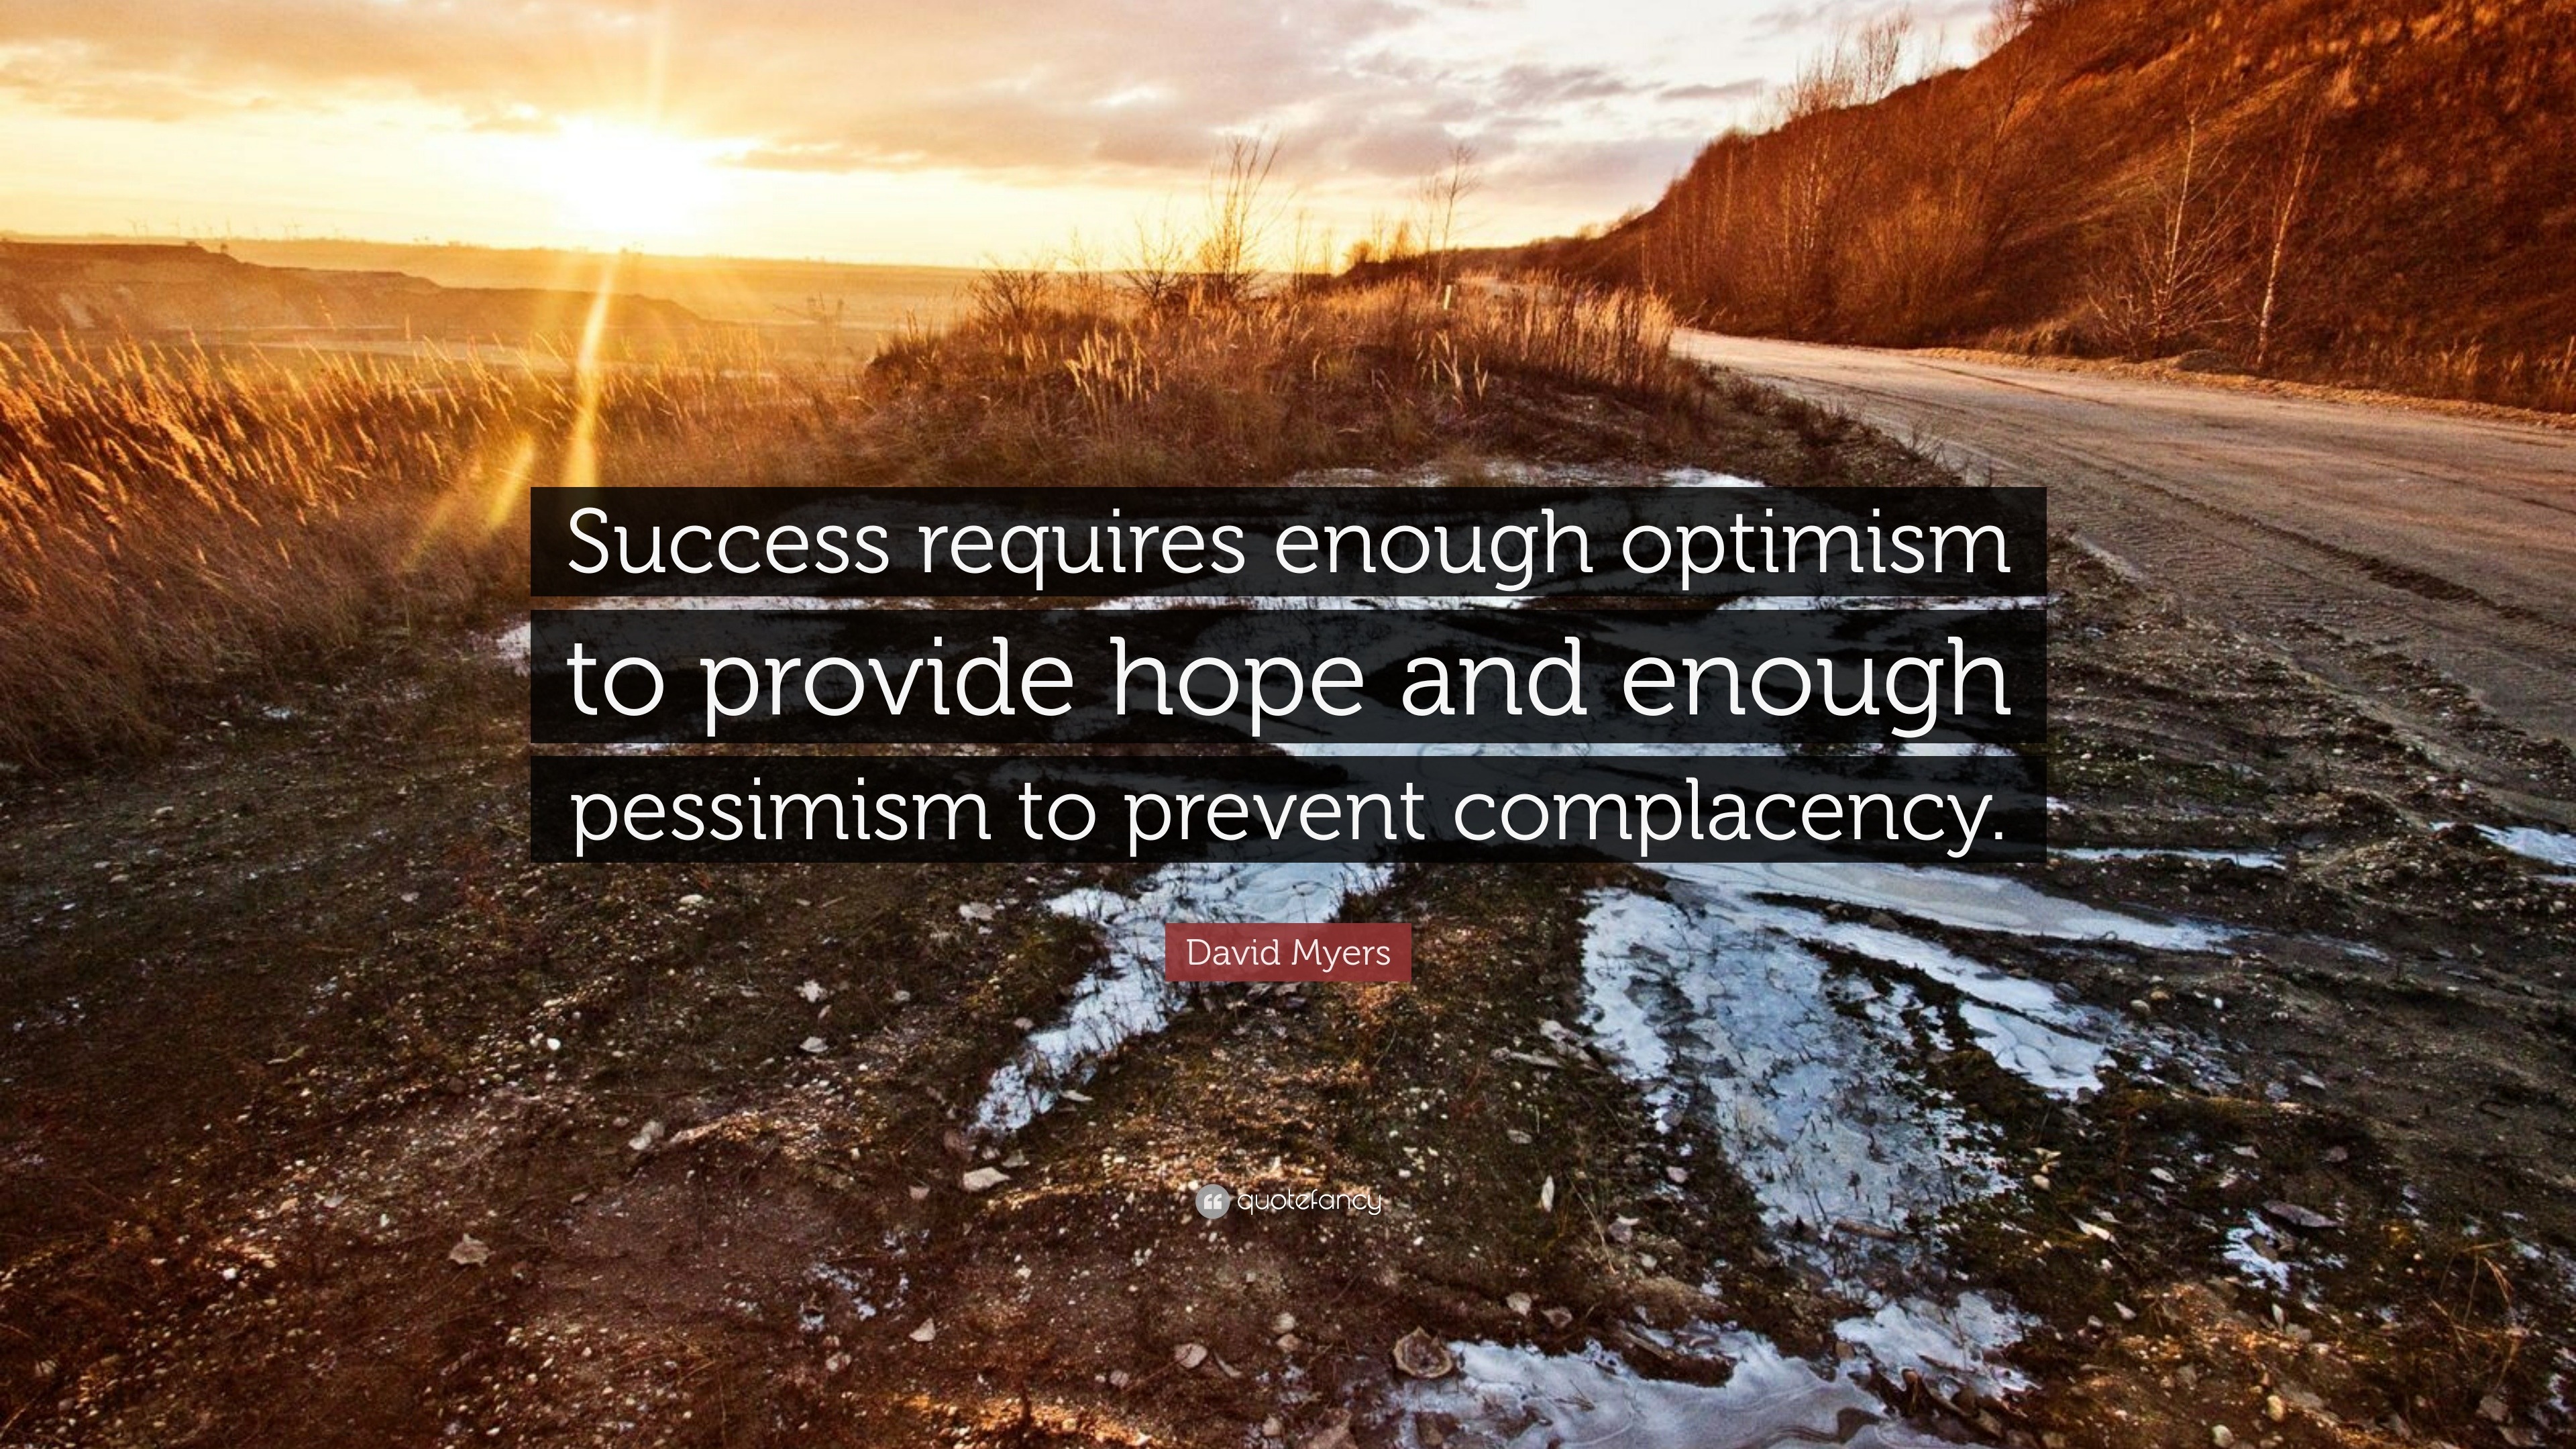 optimism quotes wallpaper